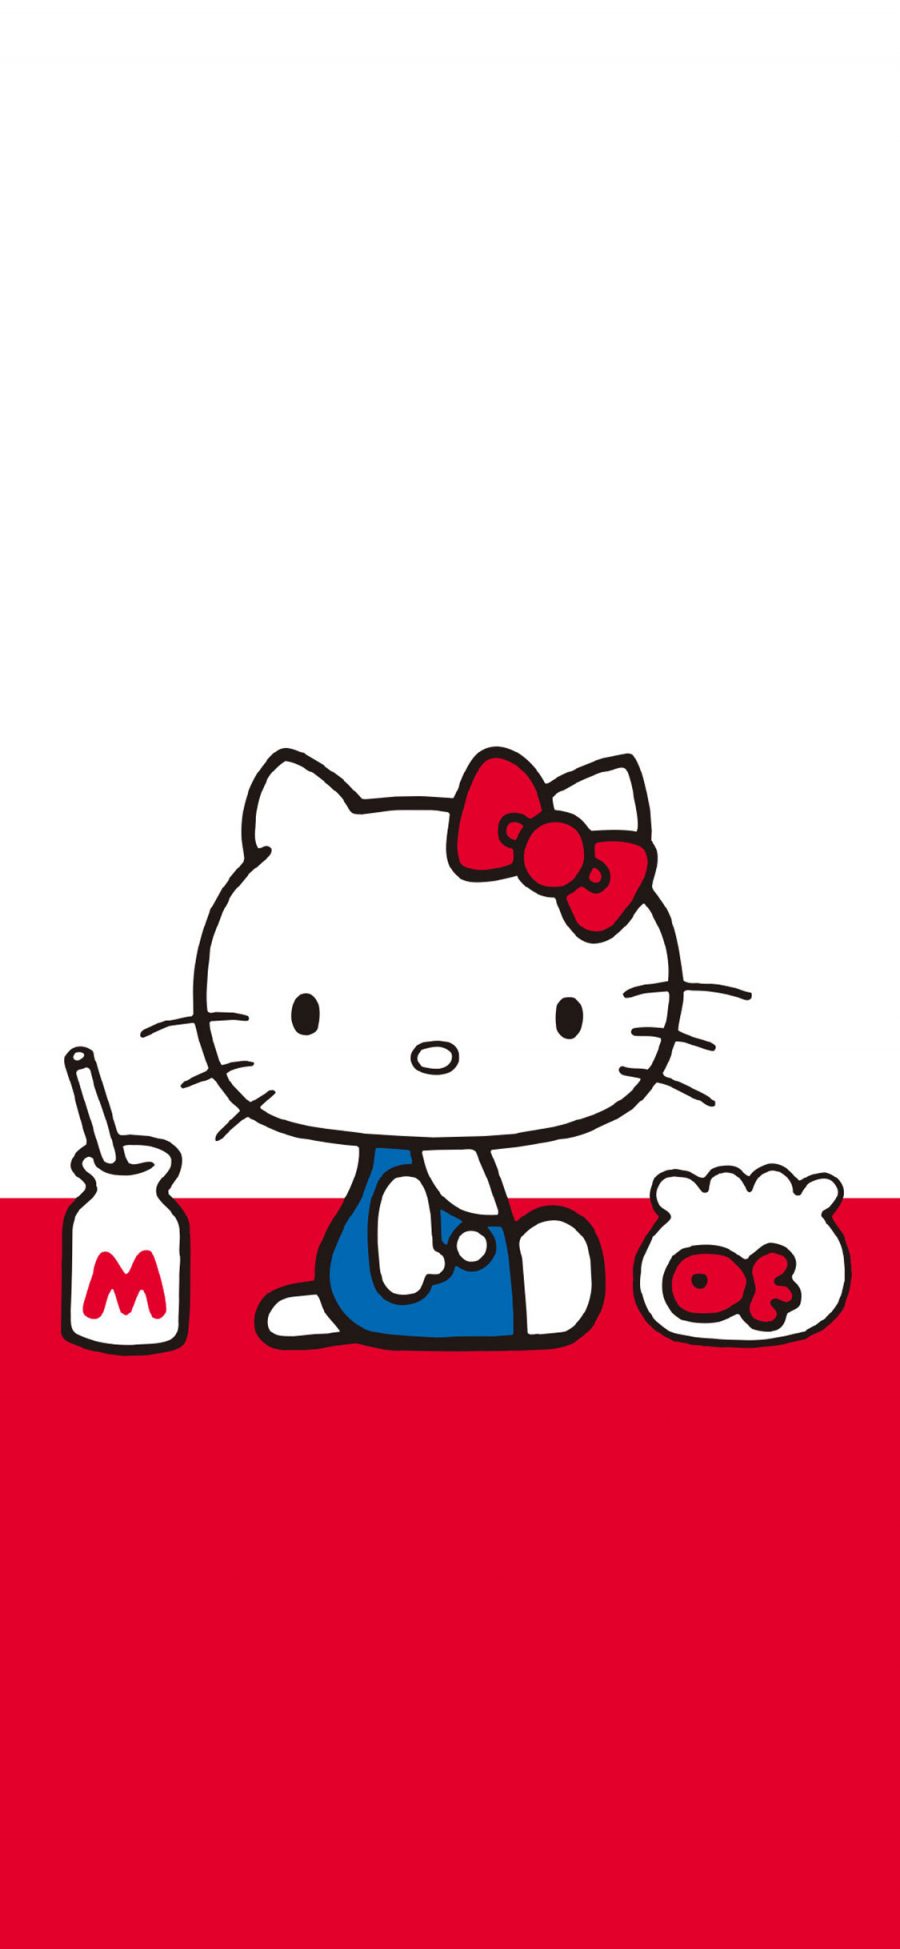 [2436×1125]Hello Kitty 红色 凯特猫 日本 动画 苹果手机动漫壁纸图片